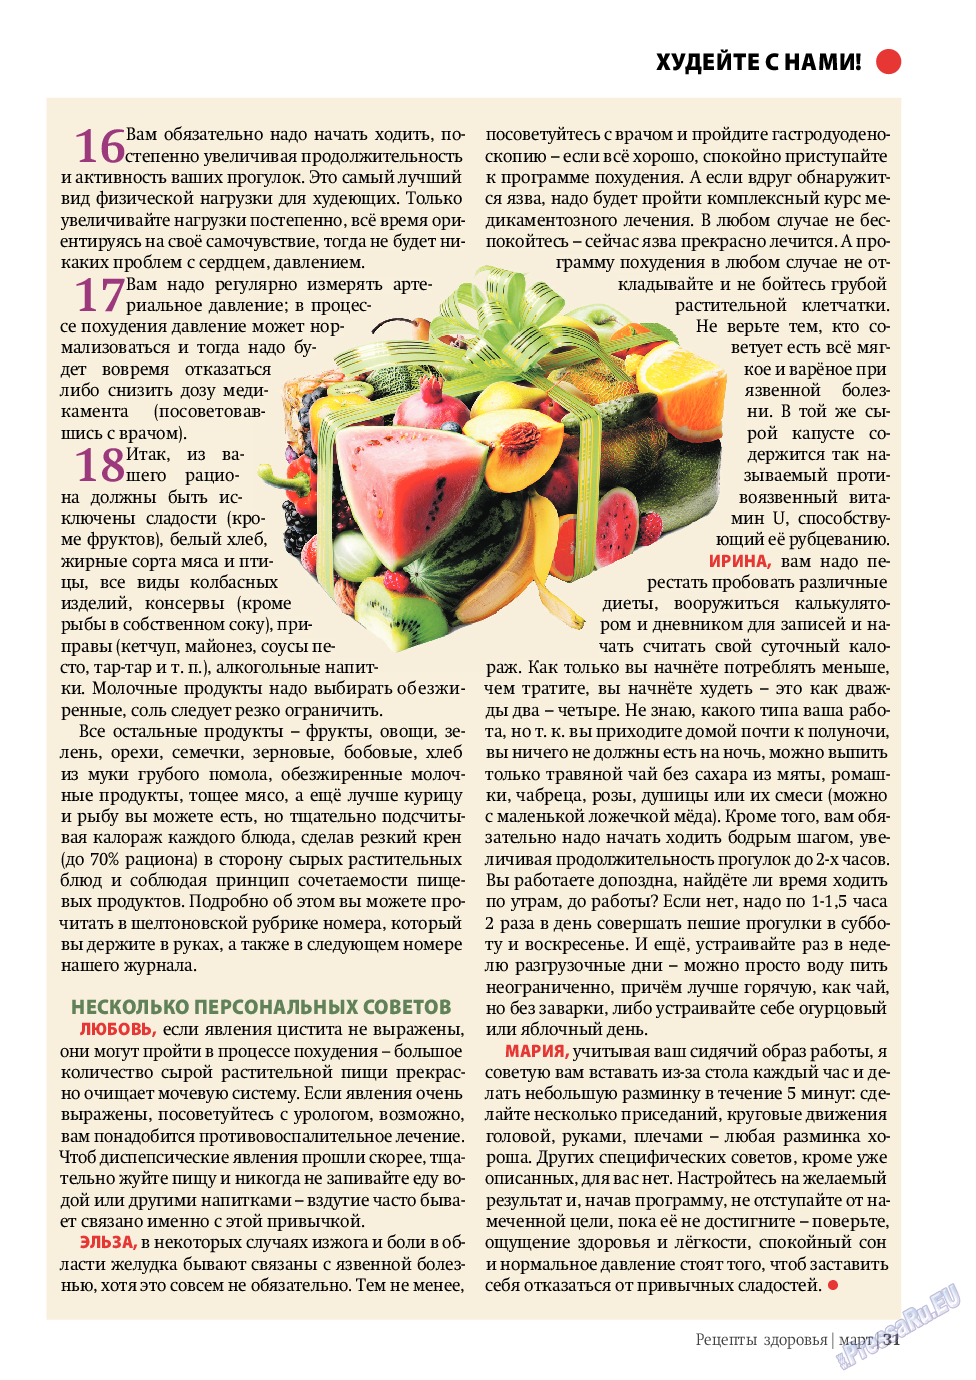 Рецепты здоровья, журнал. 2011 №3 стр.31